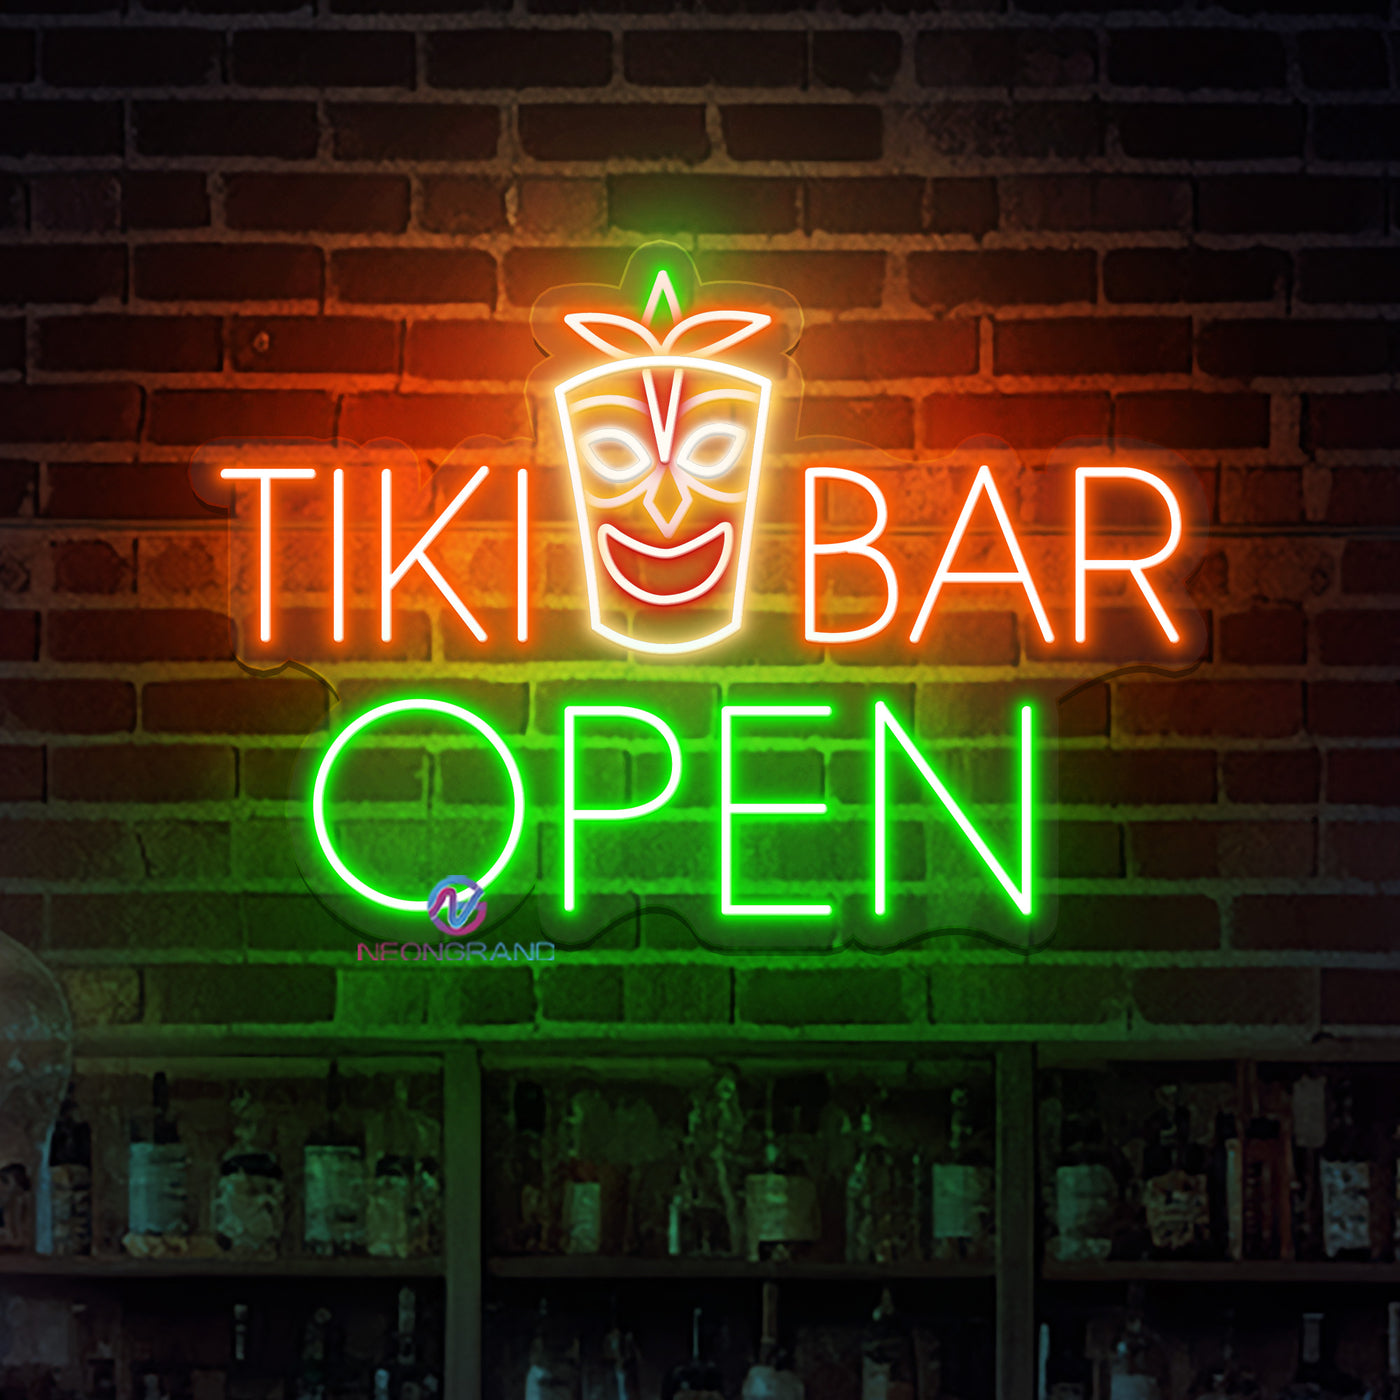 Tiki Bar Open Neon Sign Business Led Light